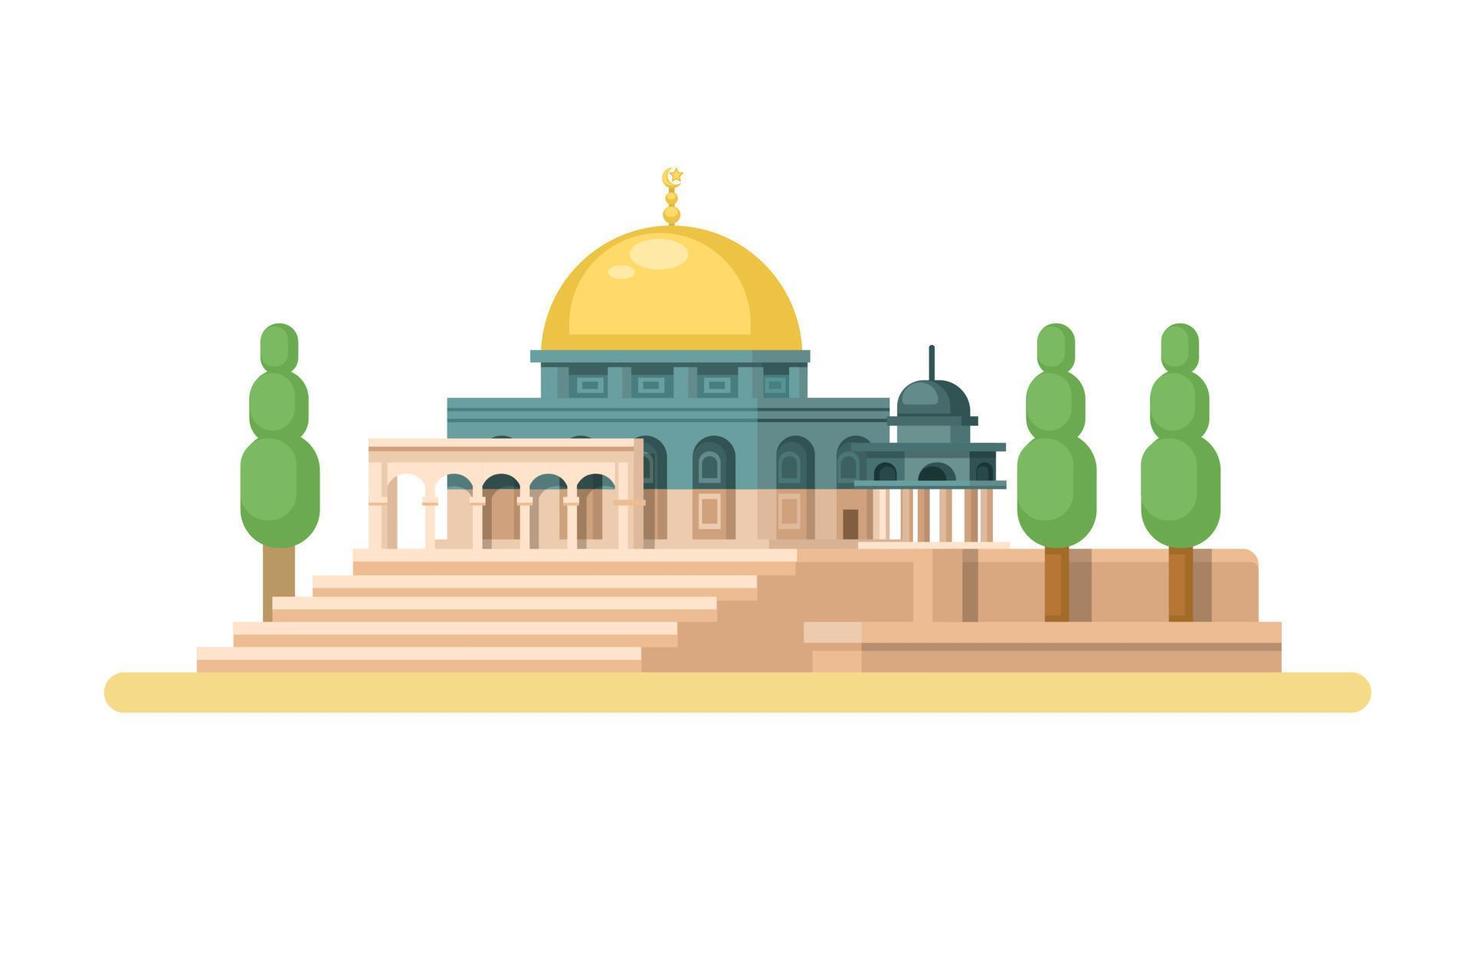 al Aqsa moské i jerusalem mitten öst Asien landmärke byggnad illustration vektor